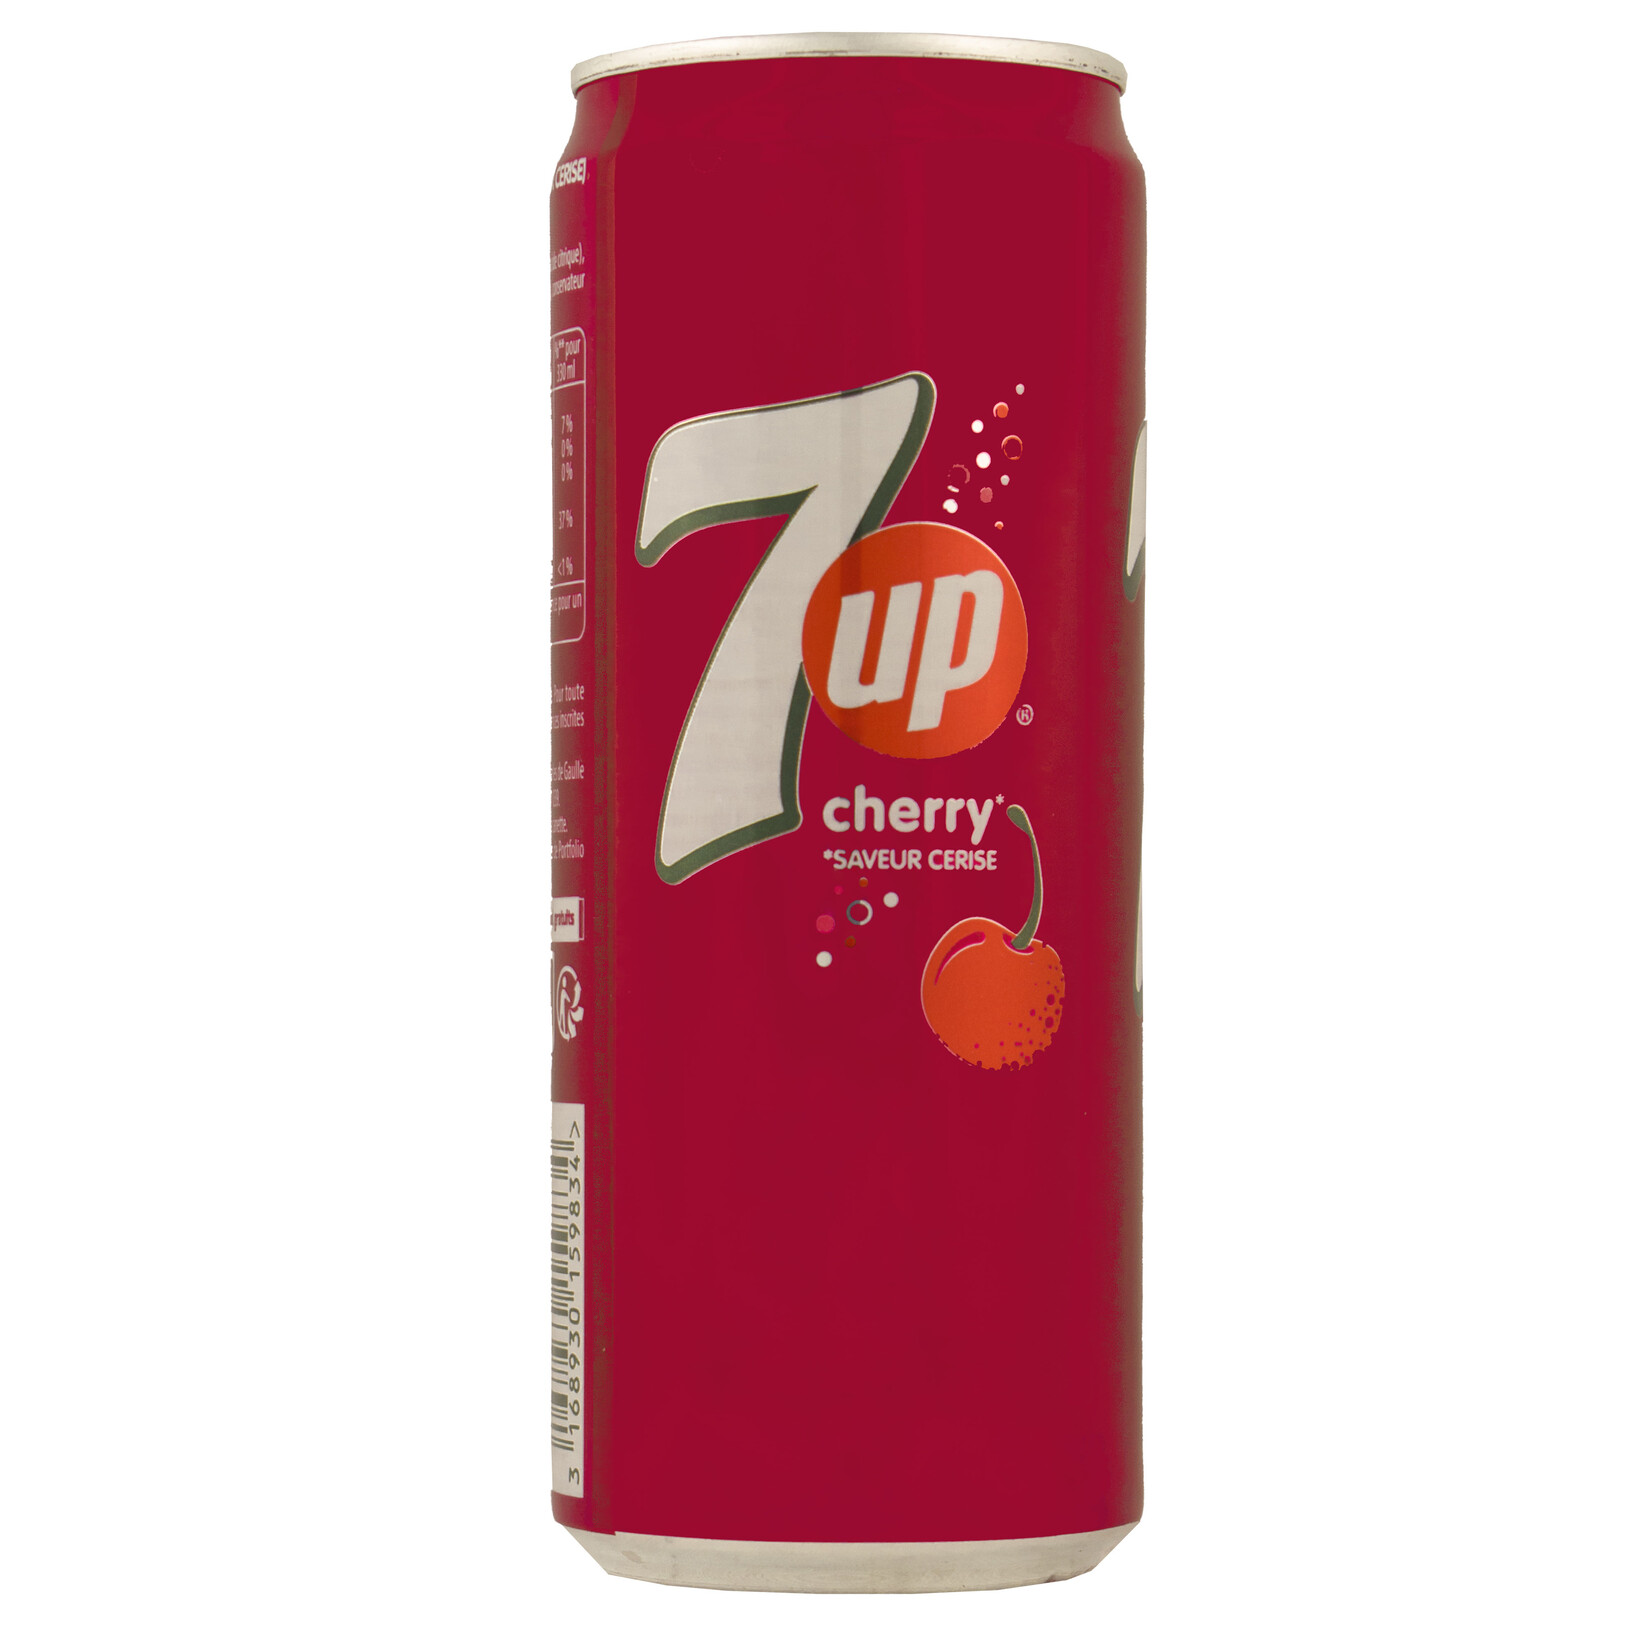 7up cherry 330ml